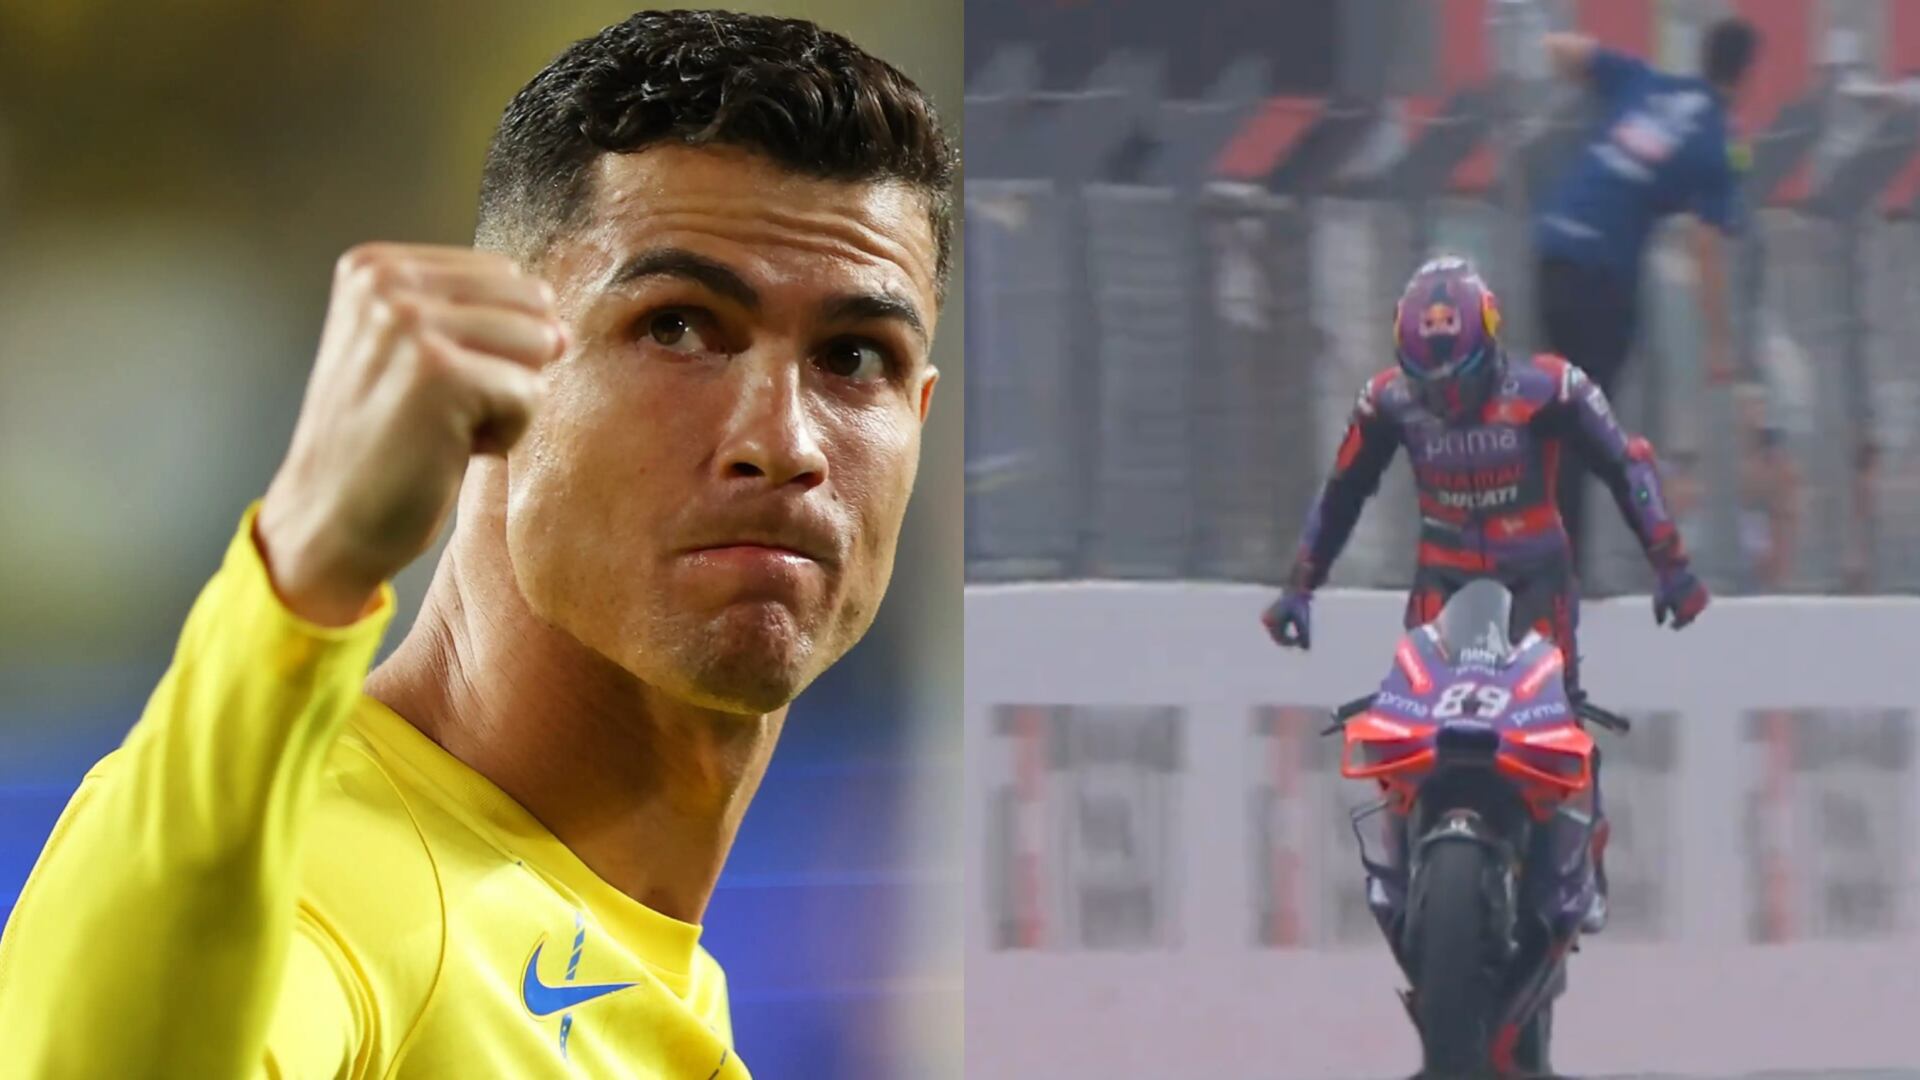 The Ronaldo effect? How Cristiano Ronaldo influenced a Motor racer